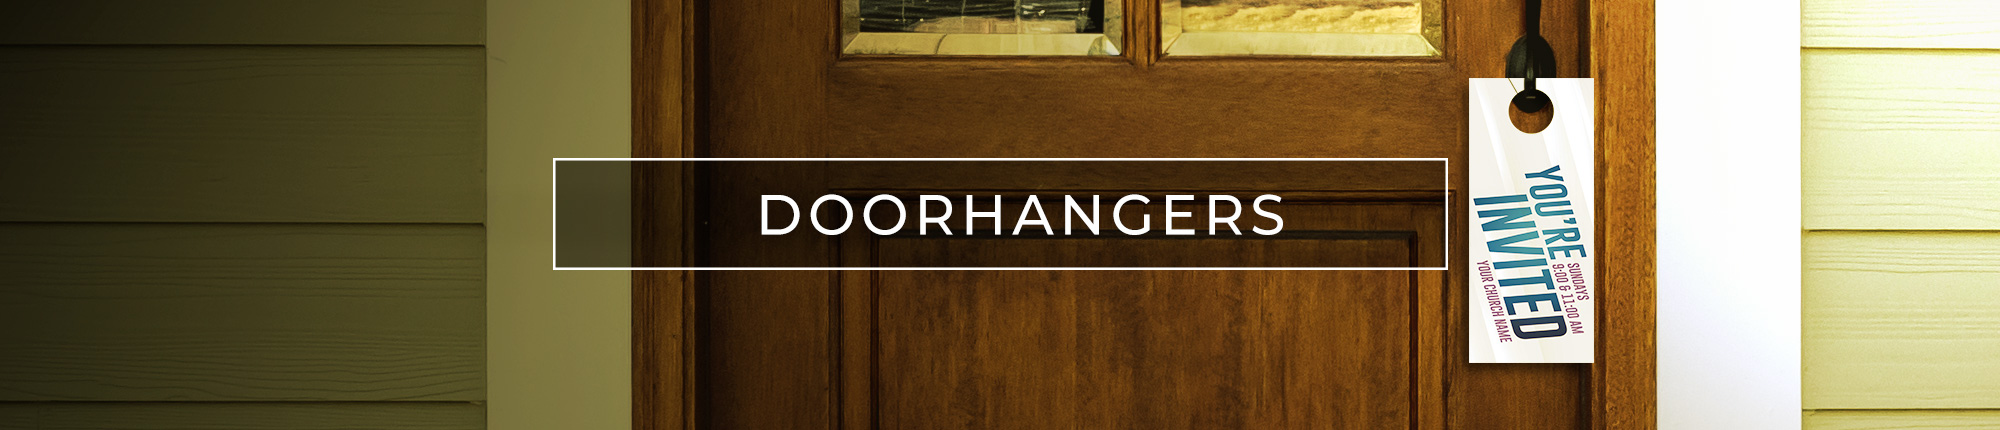 Church Door Hangers